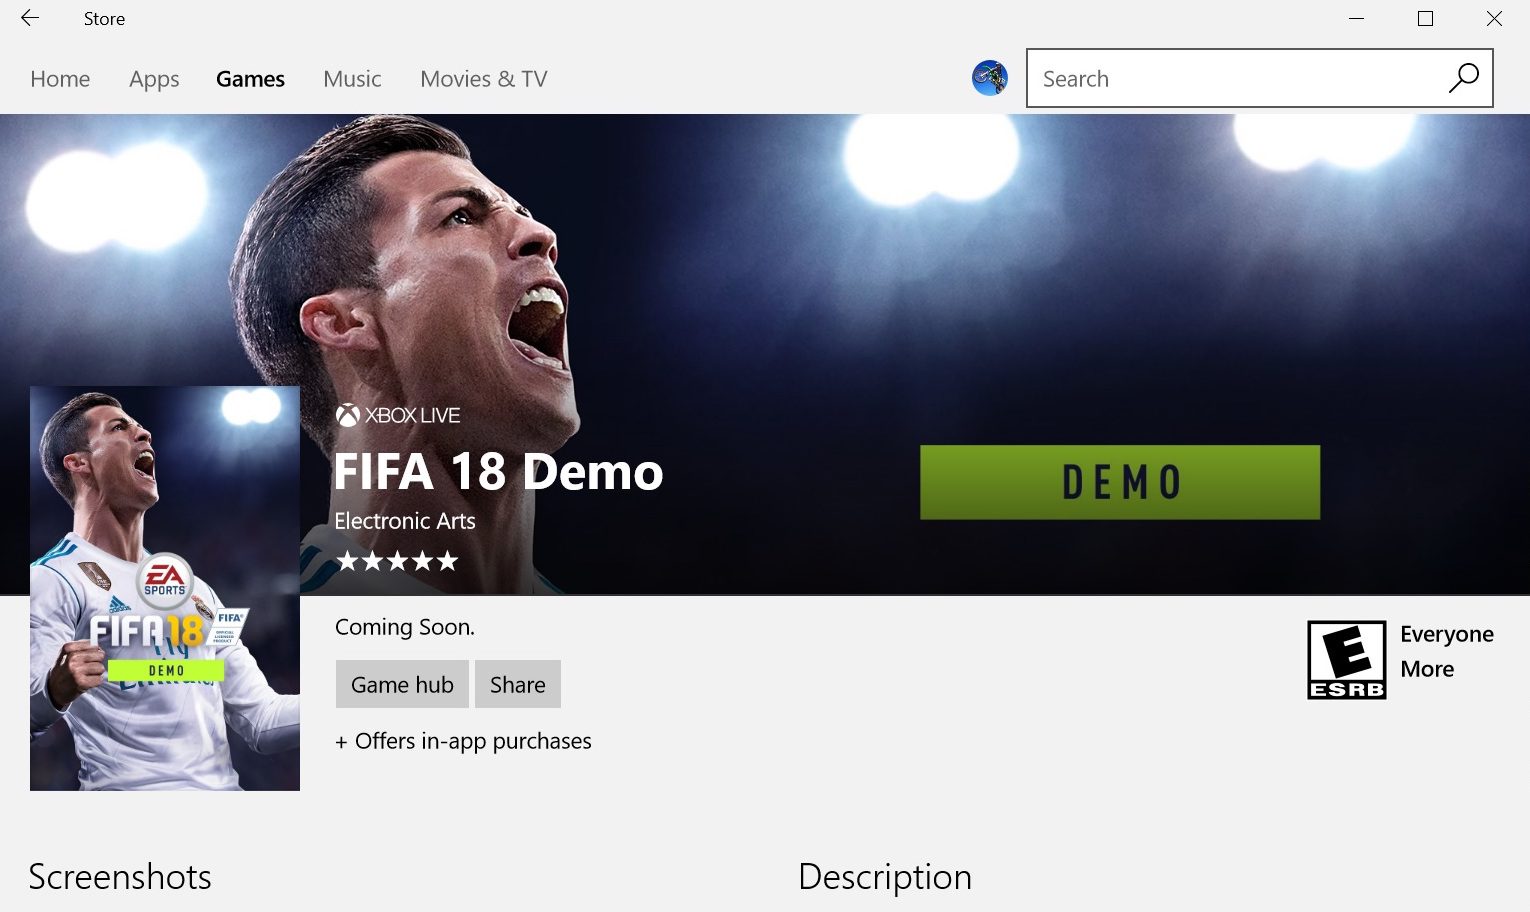 Fecha y detalles de lanzamiento de la demo de FIFA 18